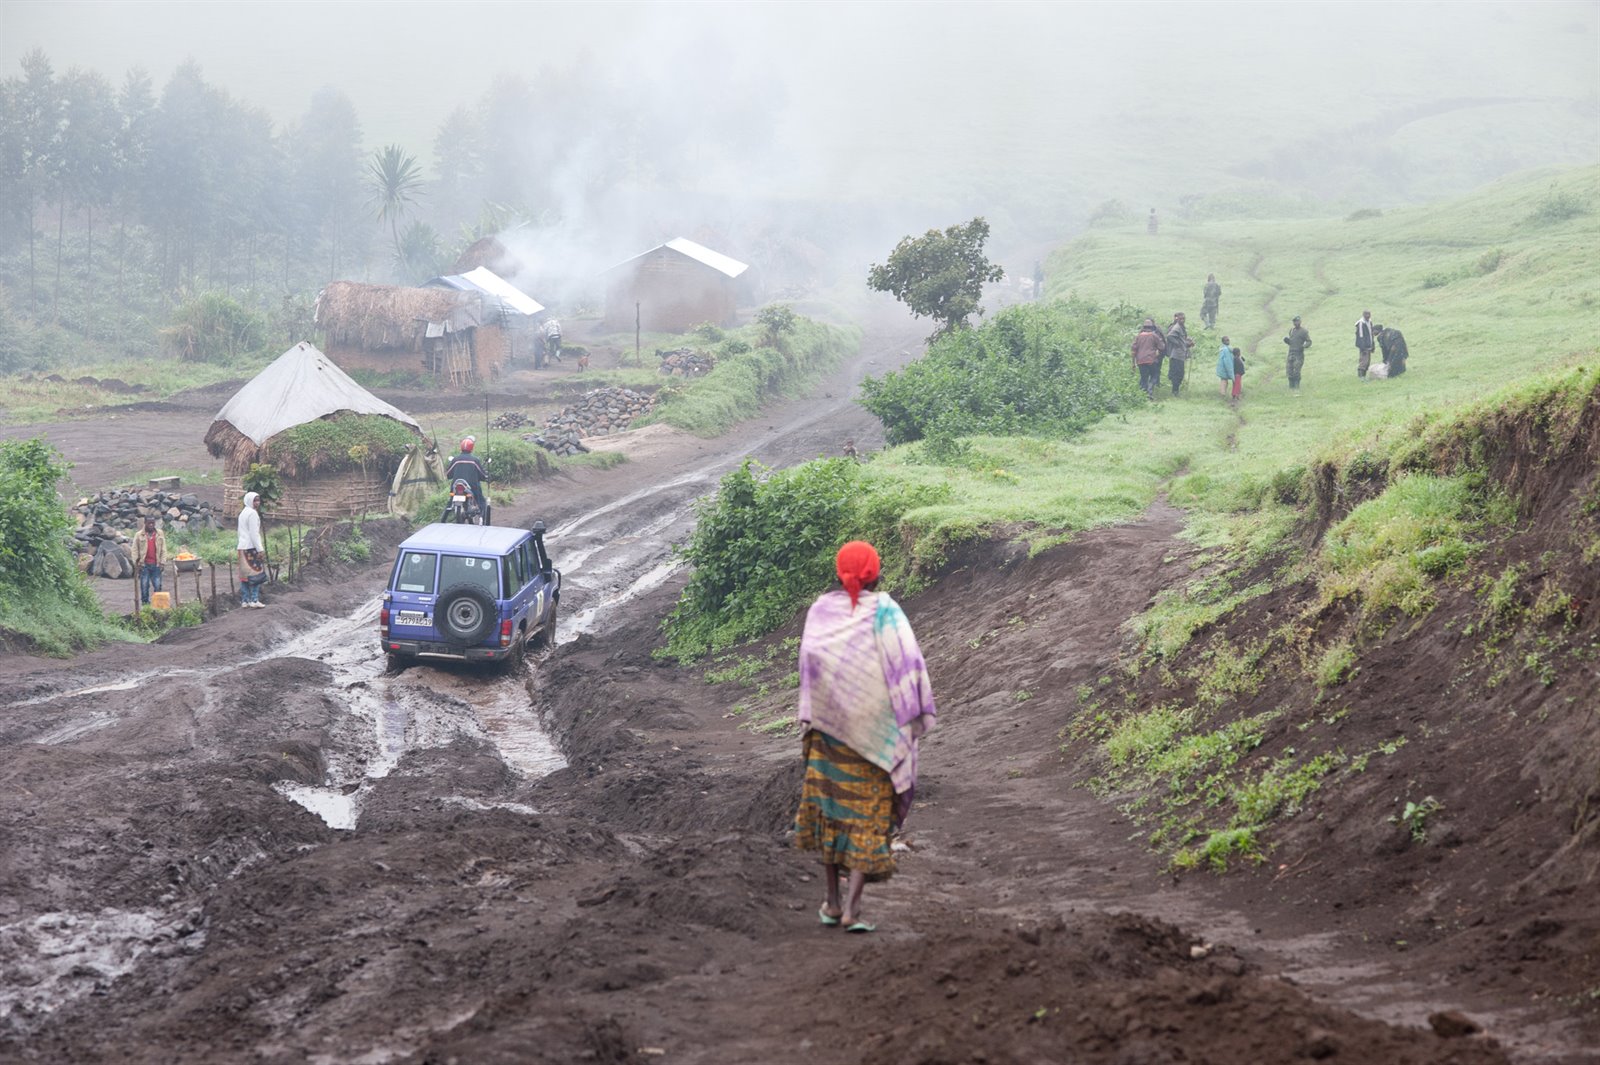 Oxfam Waterleiding DRC Congo 6 - moeilijk begaanbaar terrein terreinwagen